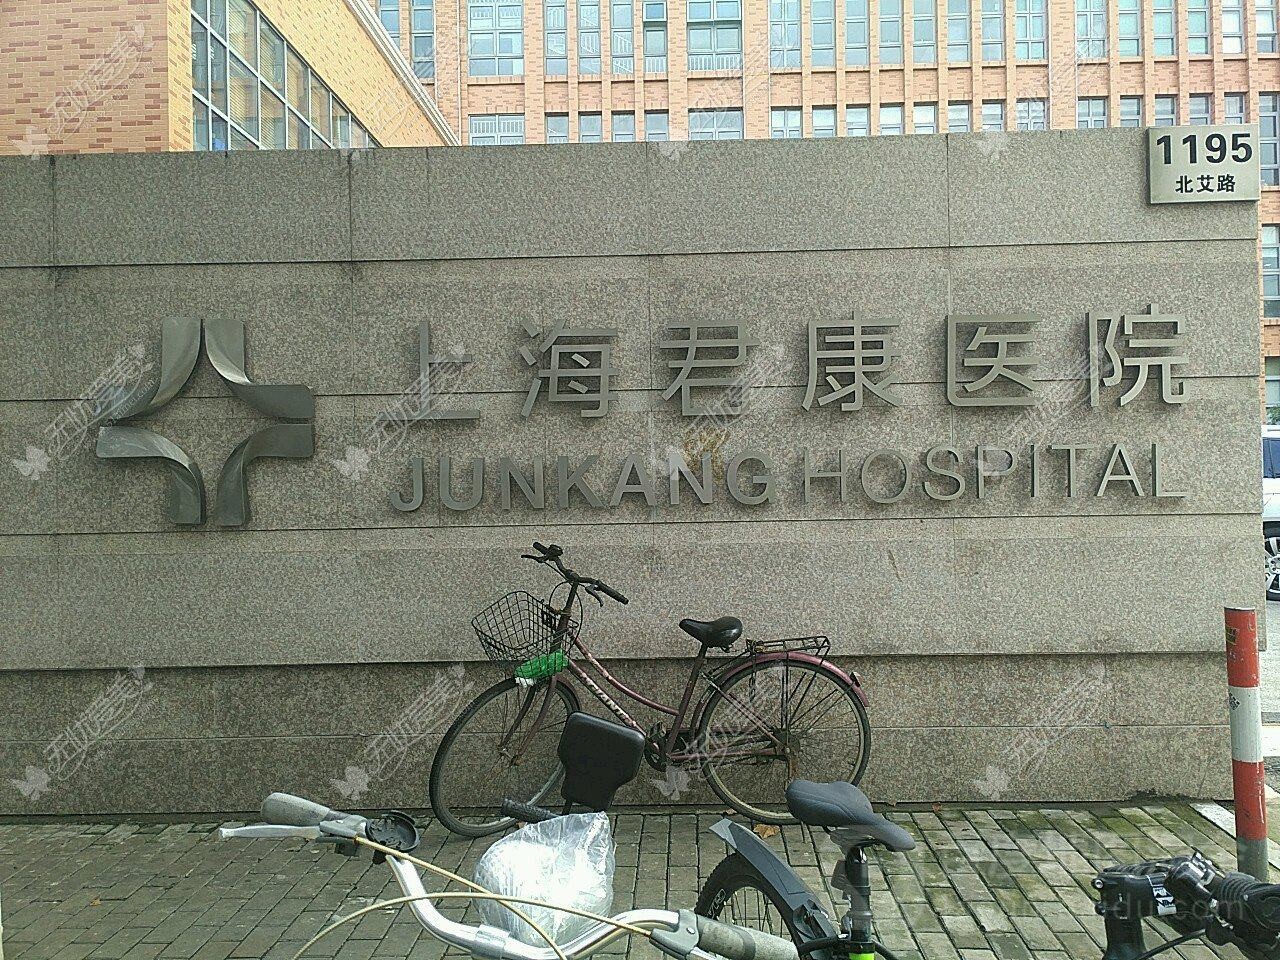 上海君康医院整形科